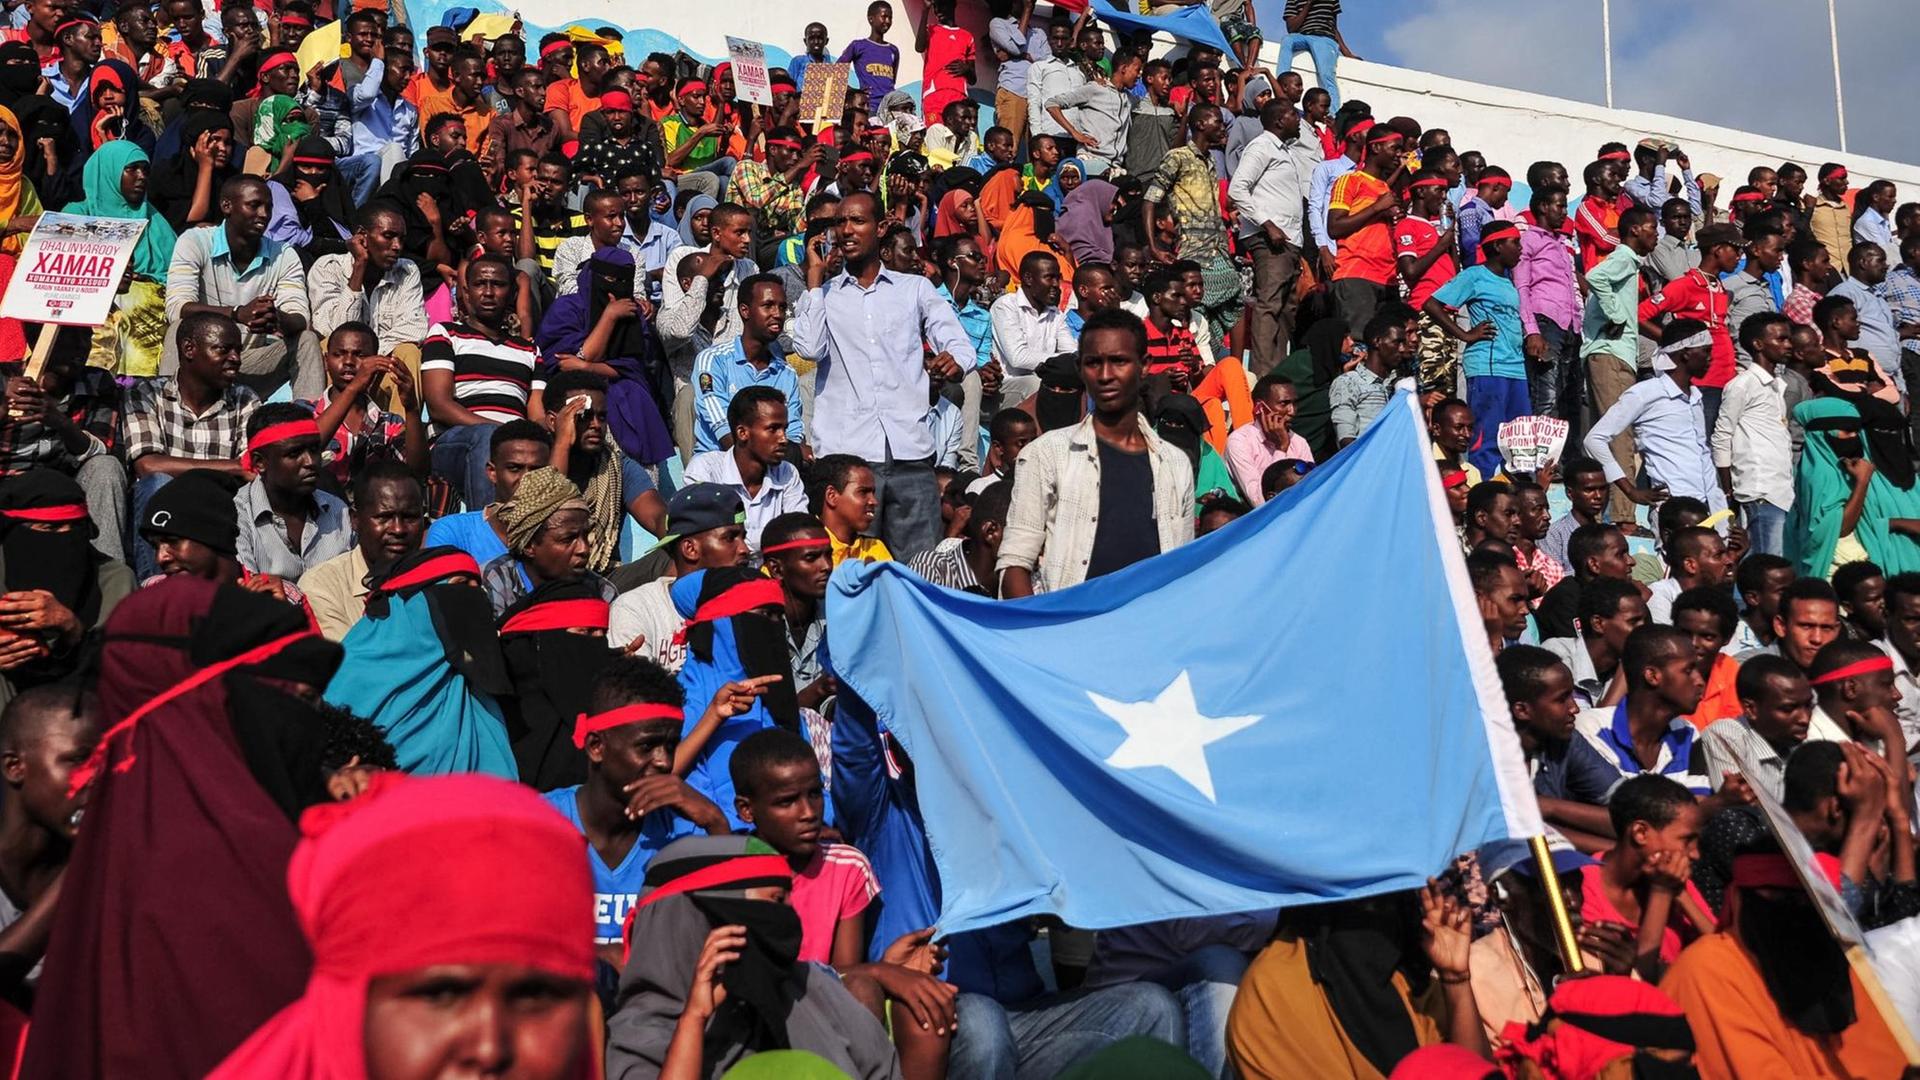 Zahlreiche Menschen nehmen am 18. Oktober im Stadion von Mogadischu an einer Demonstration teil. Auslöser war eine Terror-Attacker mit einer Autobombe in Mogadischu wenige Tage zuvor.